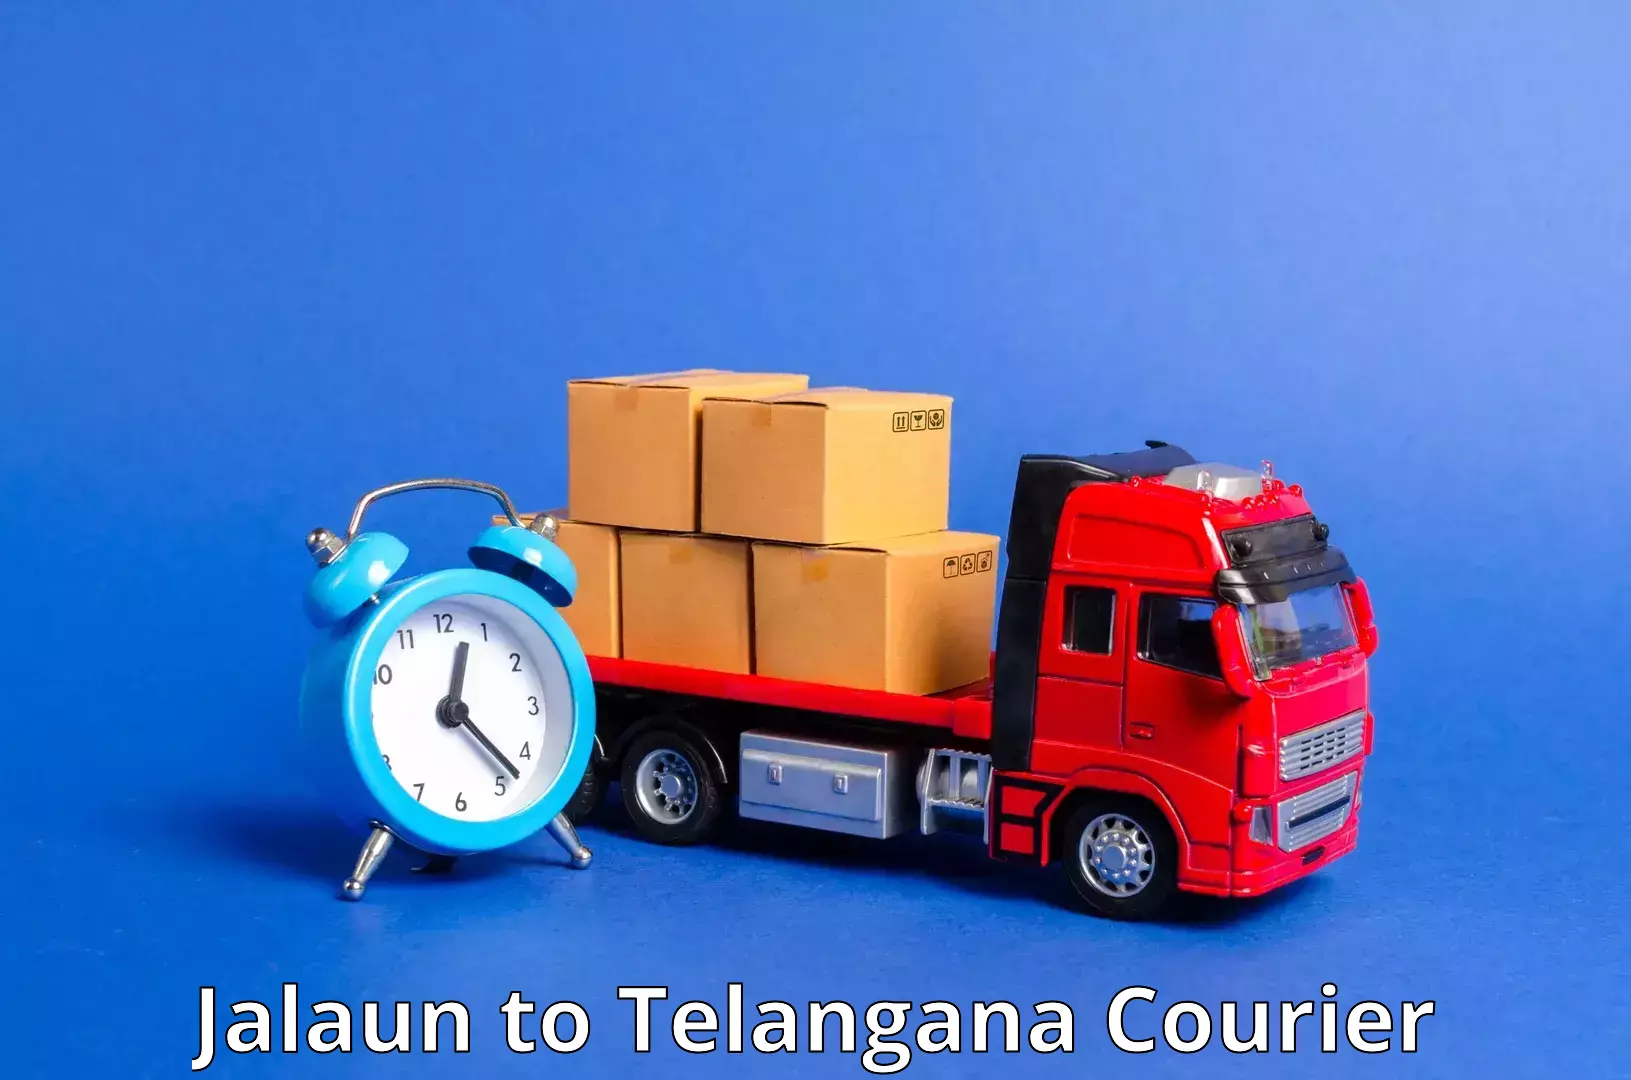 Express courier capabilities in Jalaun to Jangaon